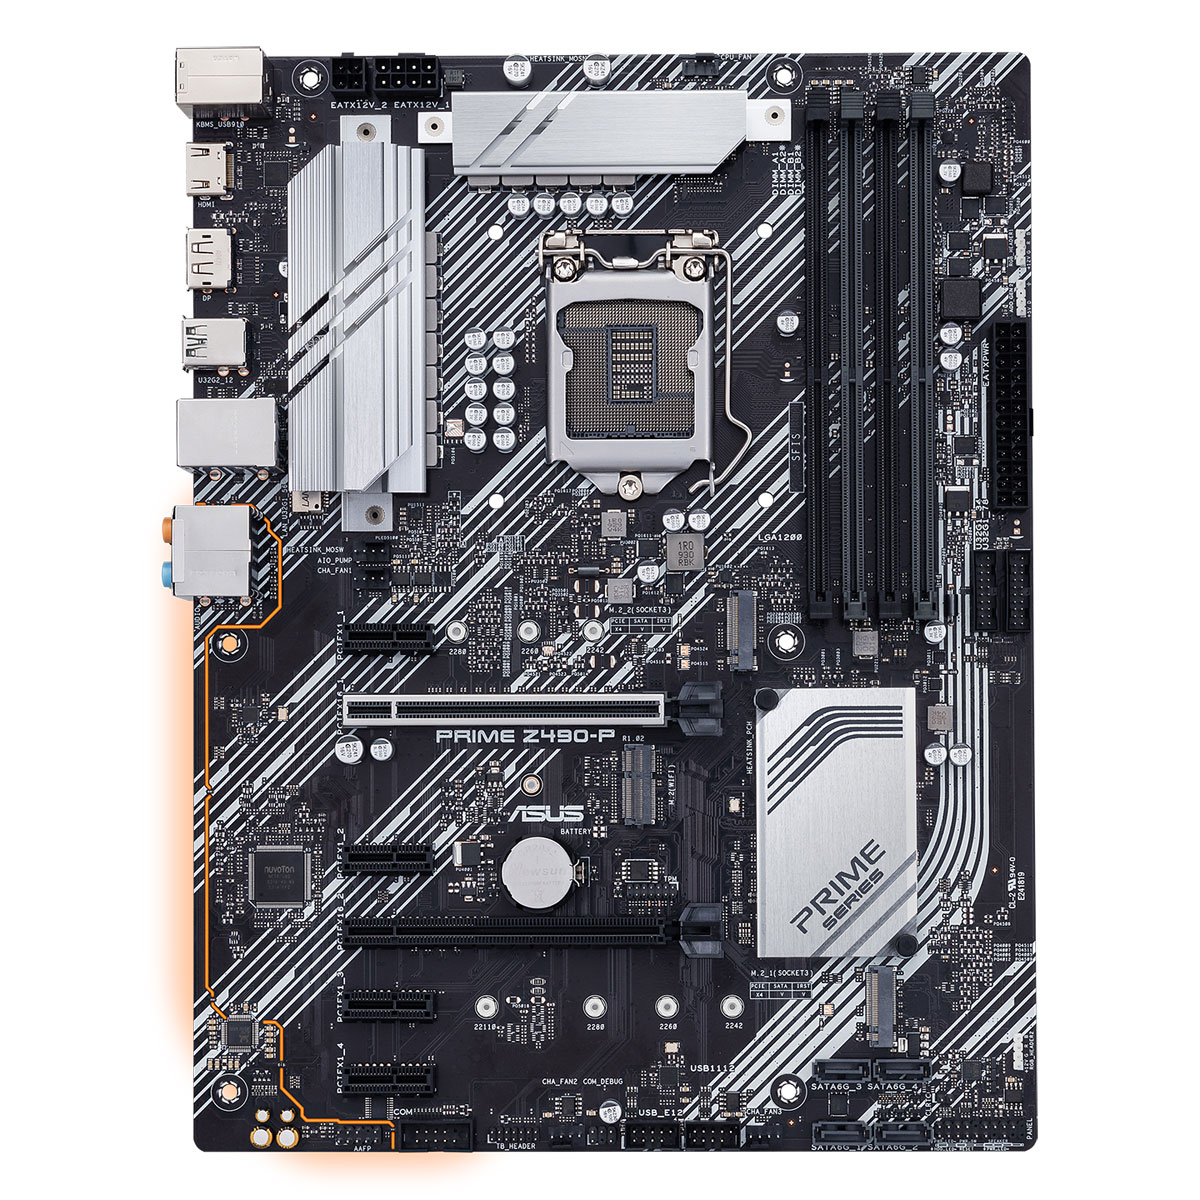 Asus - Asus Prime Z490-P (Socket LGA 1200) DDR4 ATX Motherboard